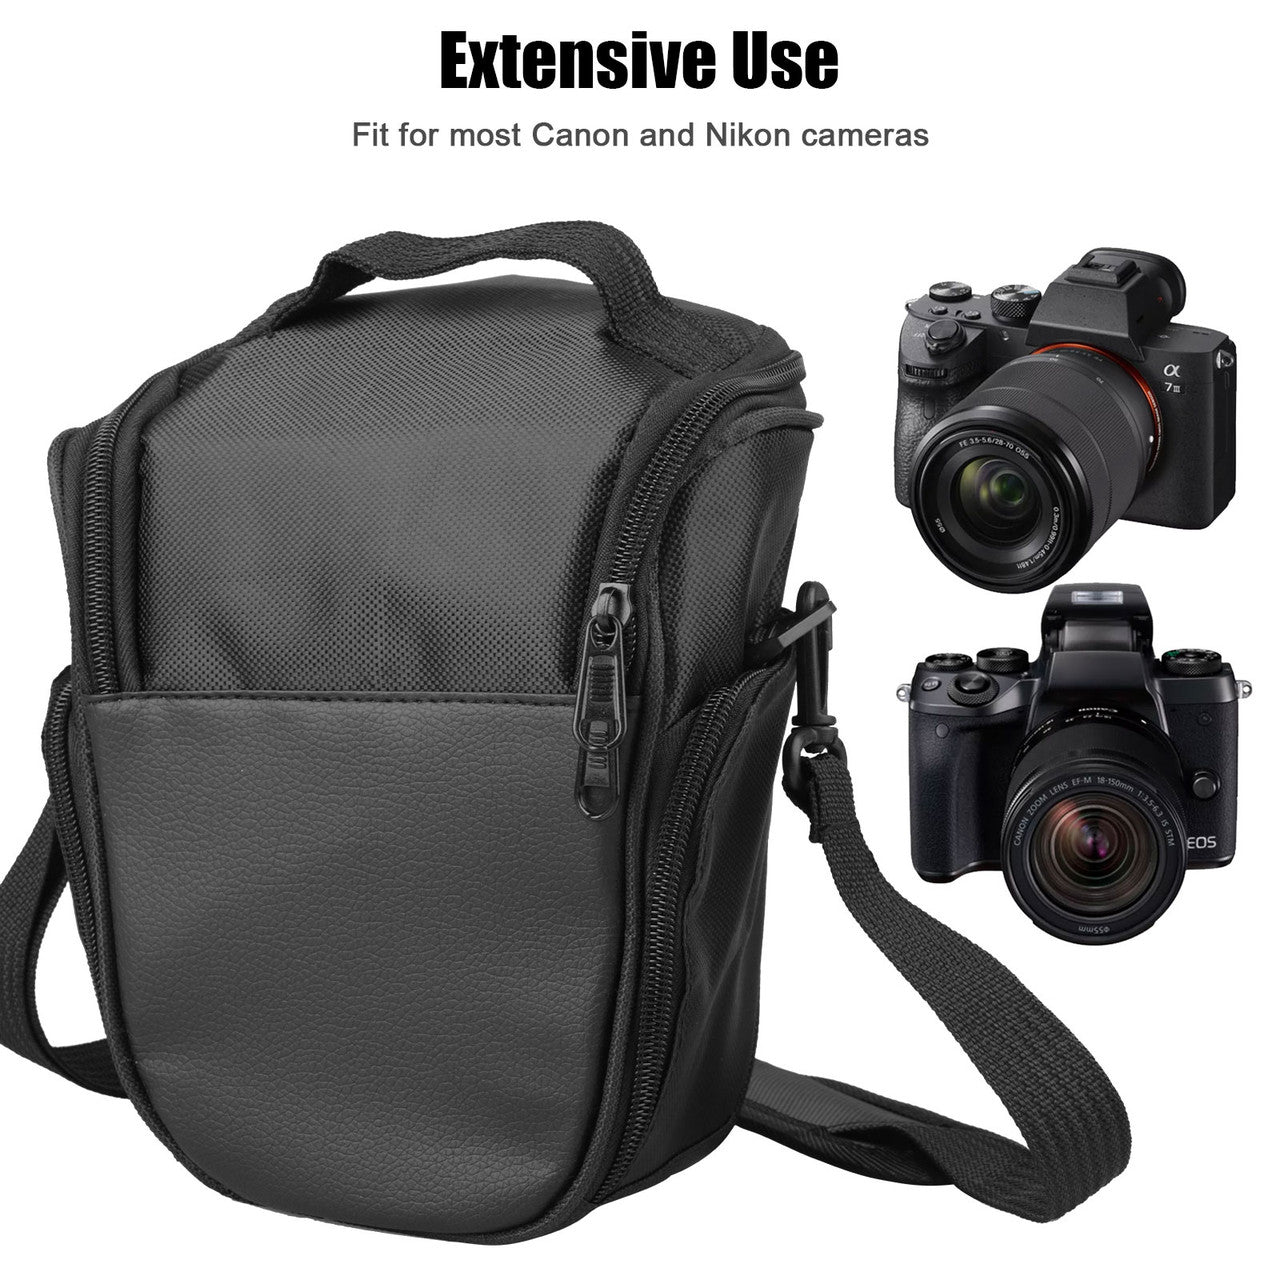 Compact Camera Crossbody Bag w/ Adjustable Strap Compatible for Nikon, Canon, Sony Cameras, Black